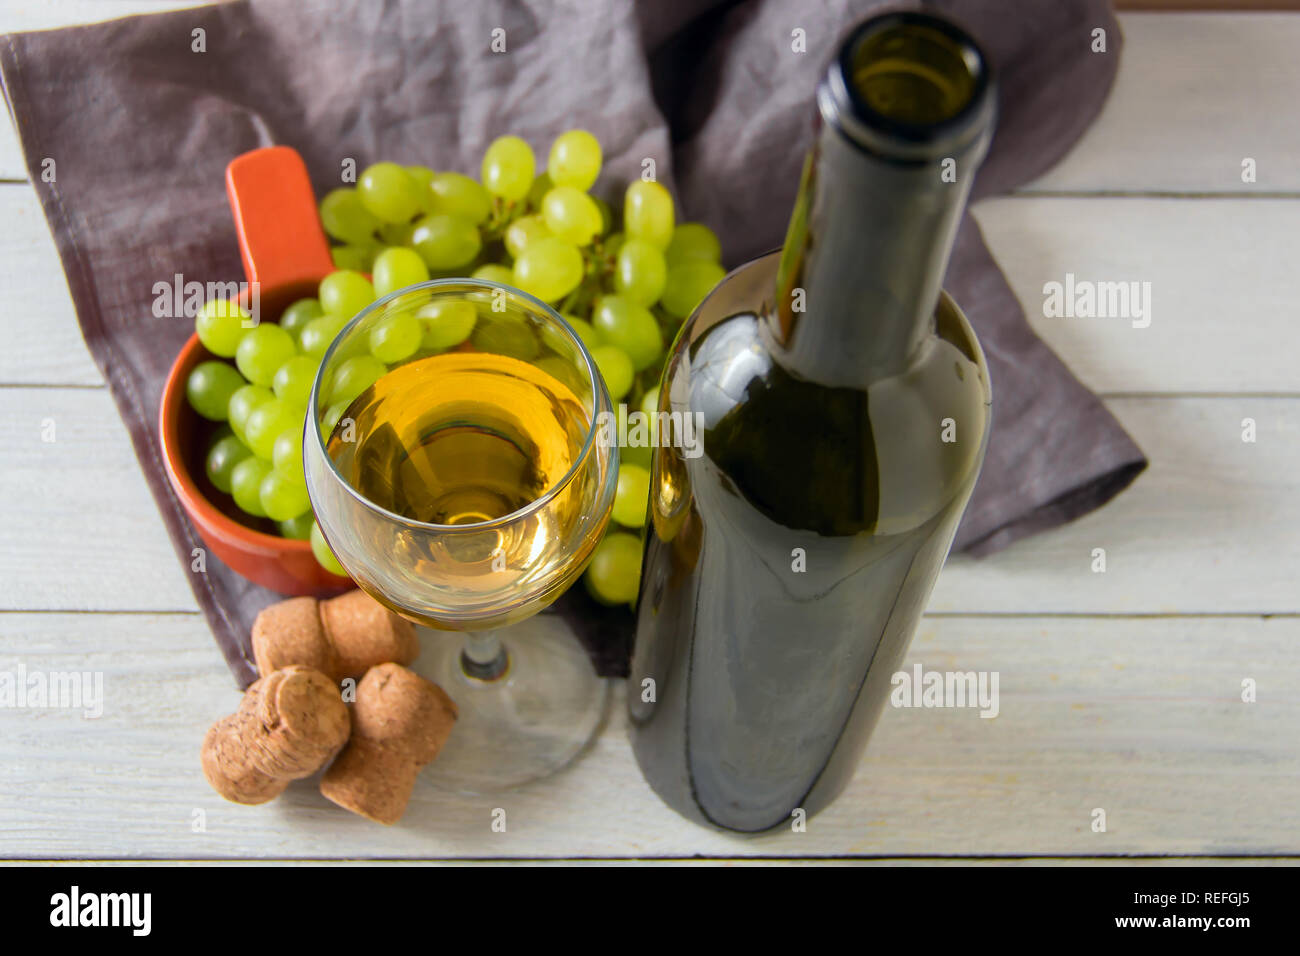 Un verre de vin, raisin vert sur la plaque sur la table Banque D'Images